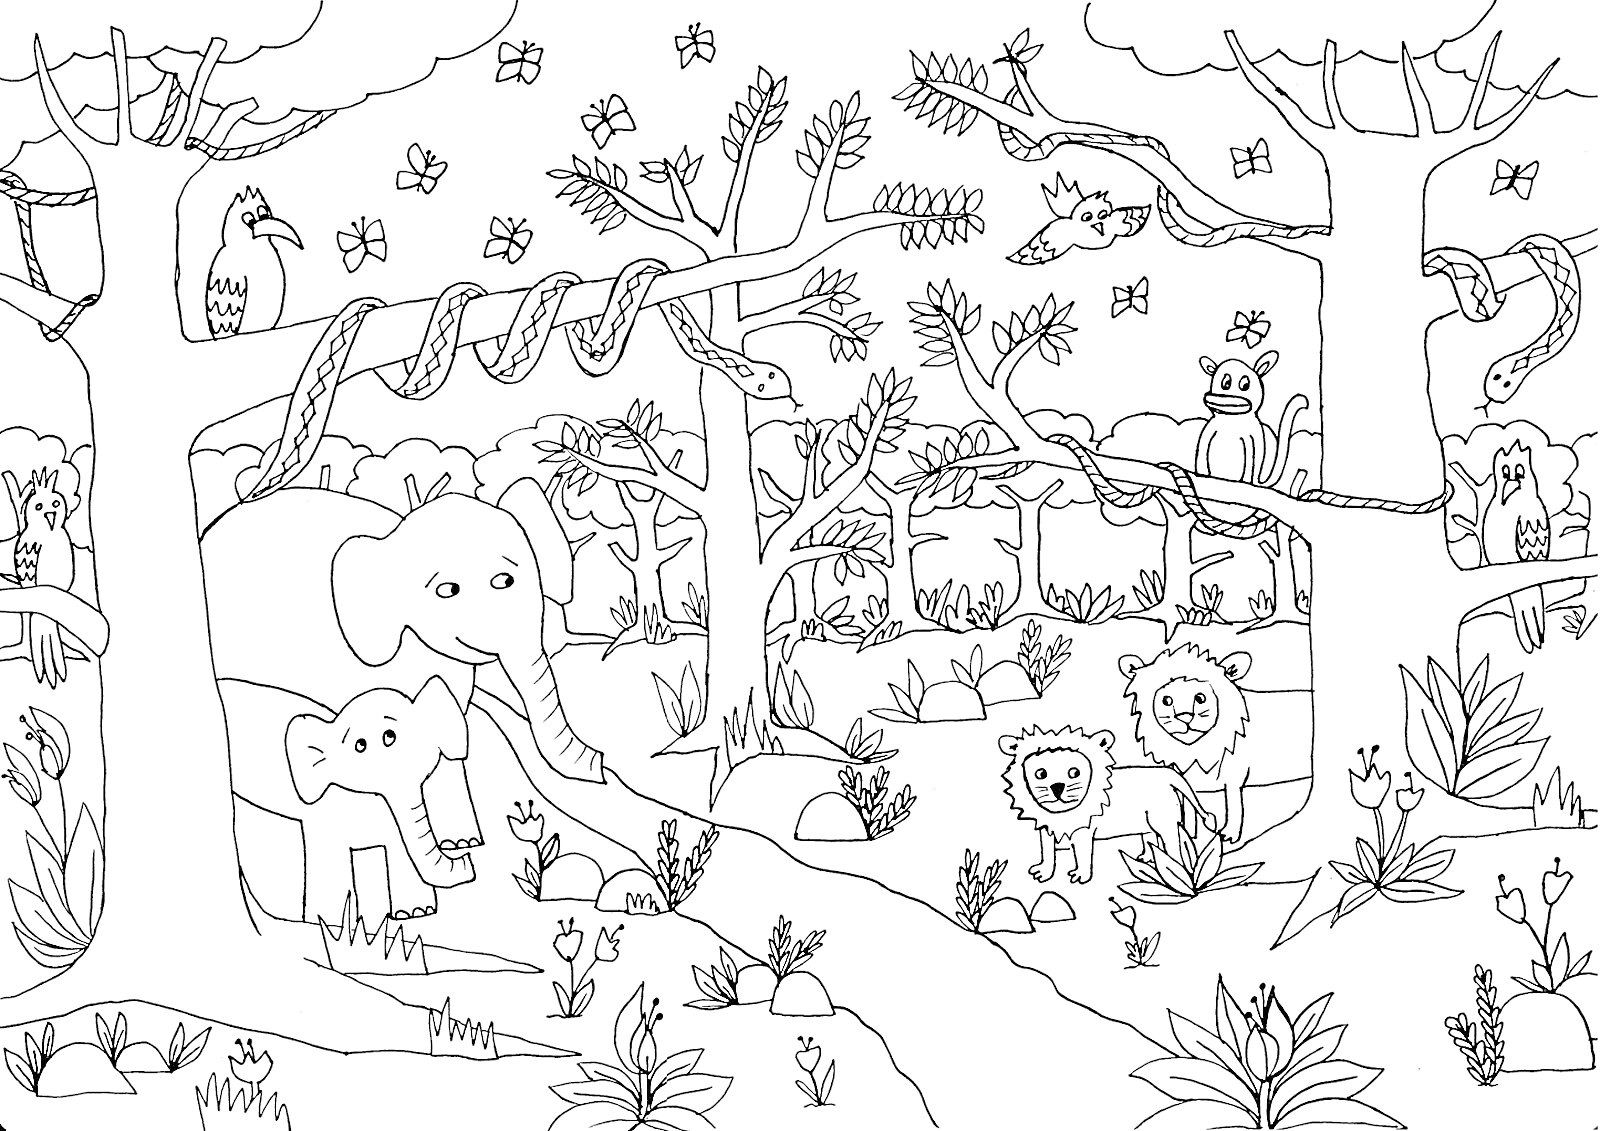 Раскраска Джунгли с животными. На изображении есть взрослый и детеныш слона, два льва, левенок, змея, попугай, обезьяна, бабочки, растения, деревья, кусты и лианы.